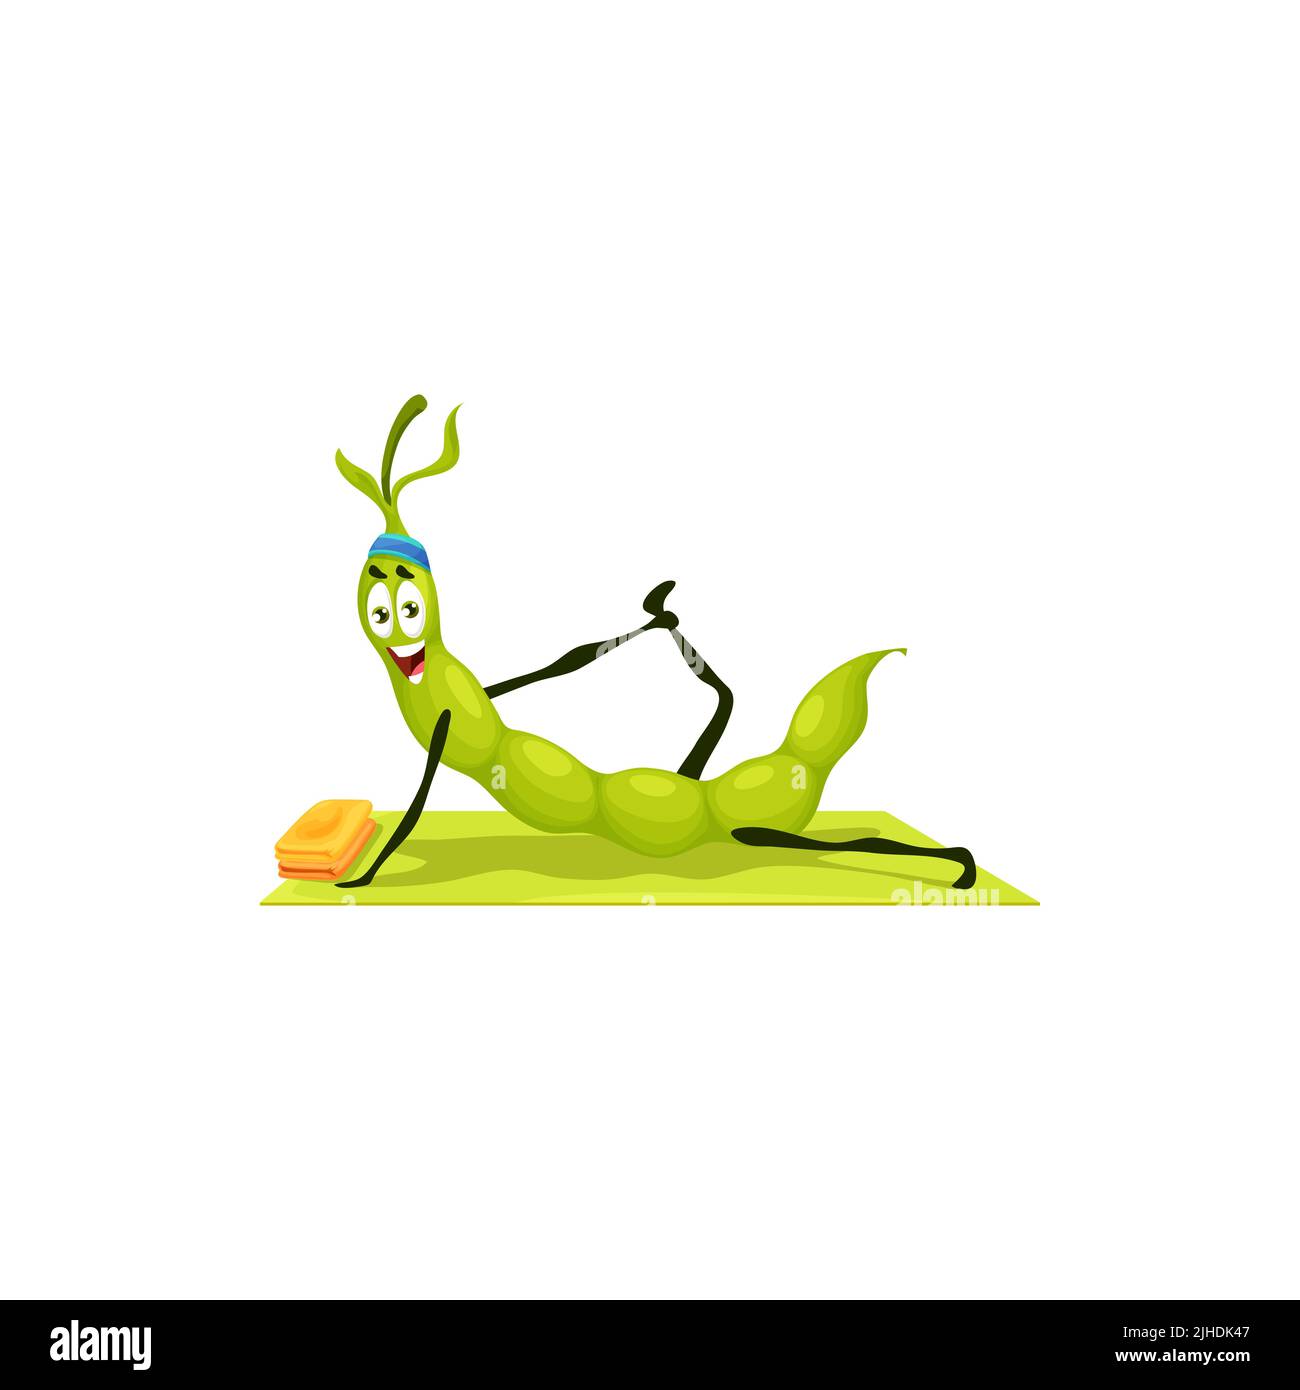 Cartoon grüne Erbse lustige Bohnenschote Charakter auf Yoga oder Pilates Fitness-Sport. Vector niedlichen Gemüse Maskottchen in Yogi-Pose liegen auf der Matte. Comic-Persönlichkeit beim Stretching-Kurs, Gesundheitspflege Yoga-Praxis Stock Vektor